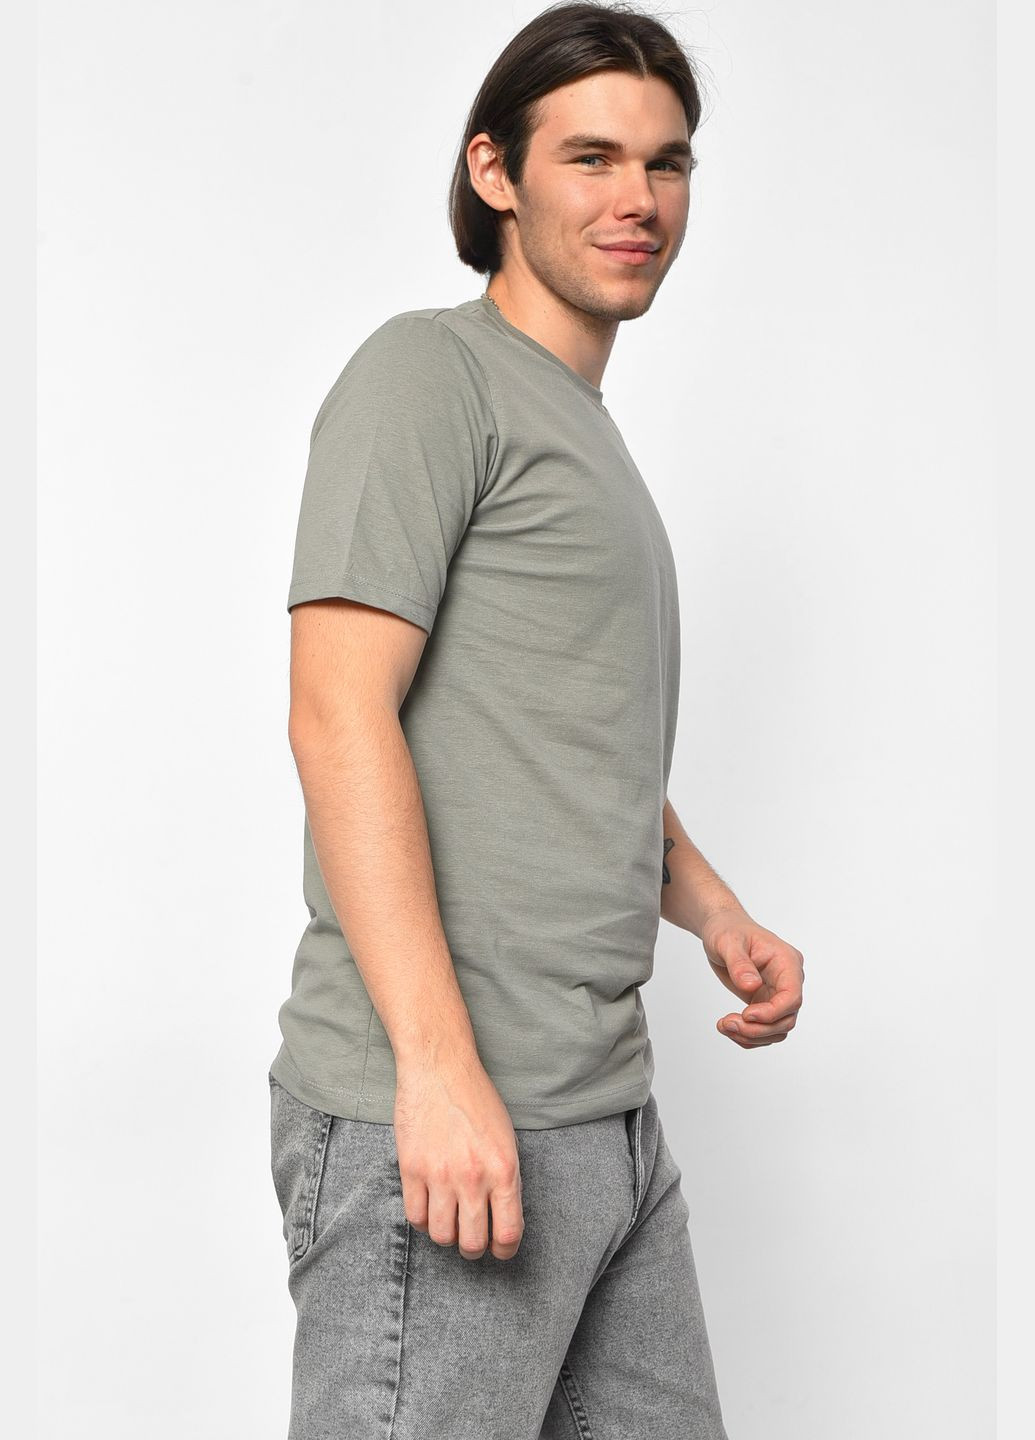 Серая футболка мужская однотонная серого цвета Let's Shop